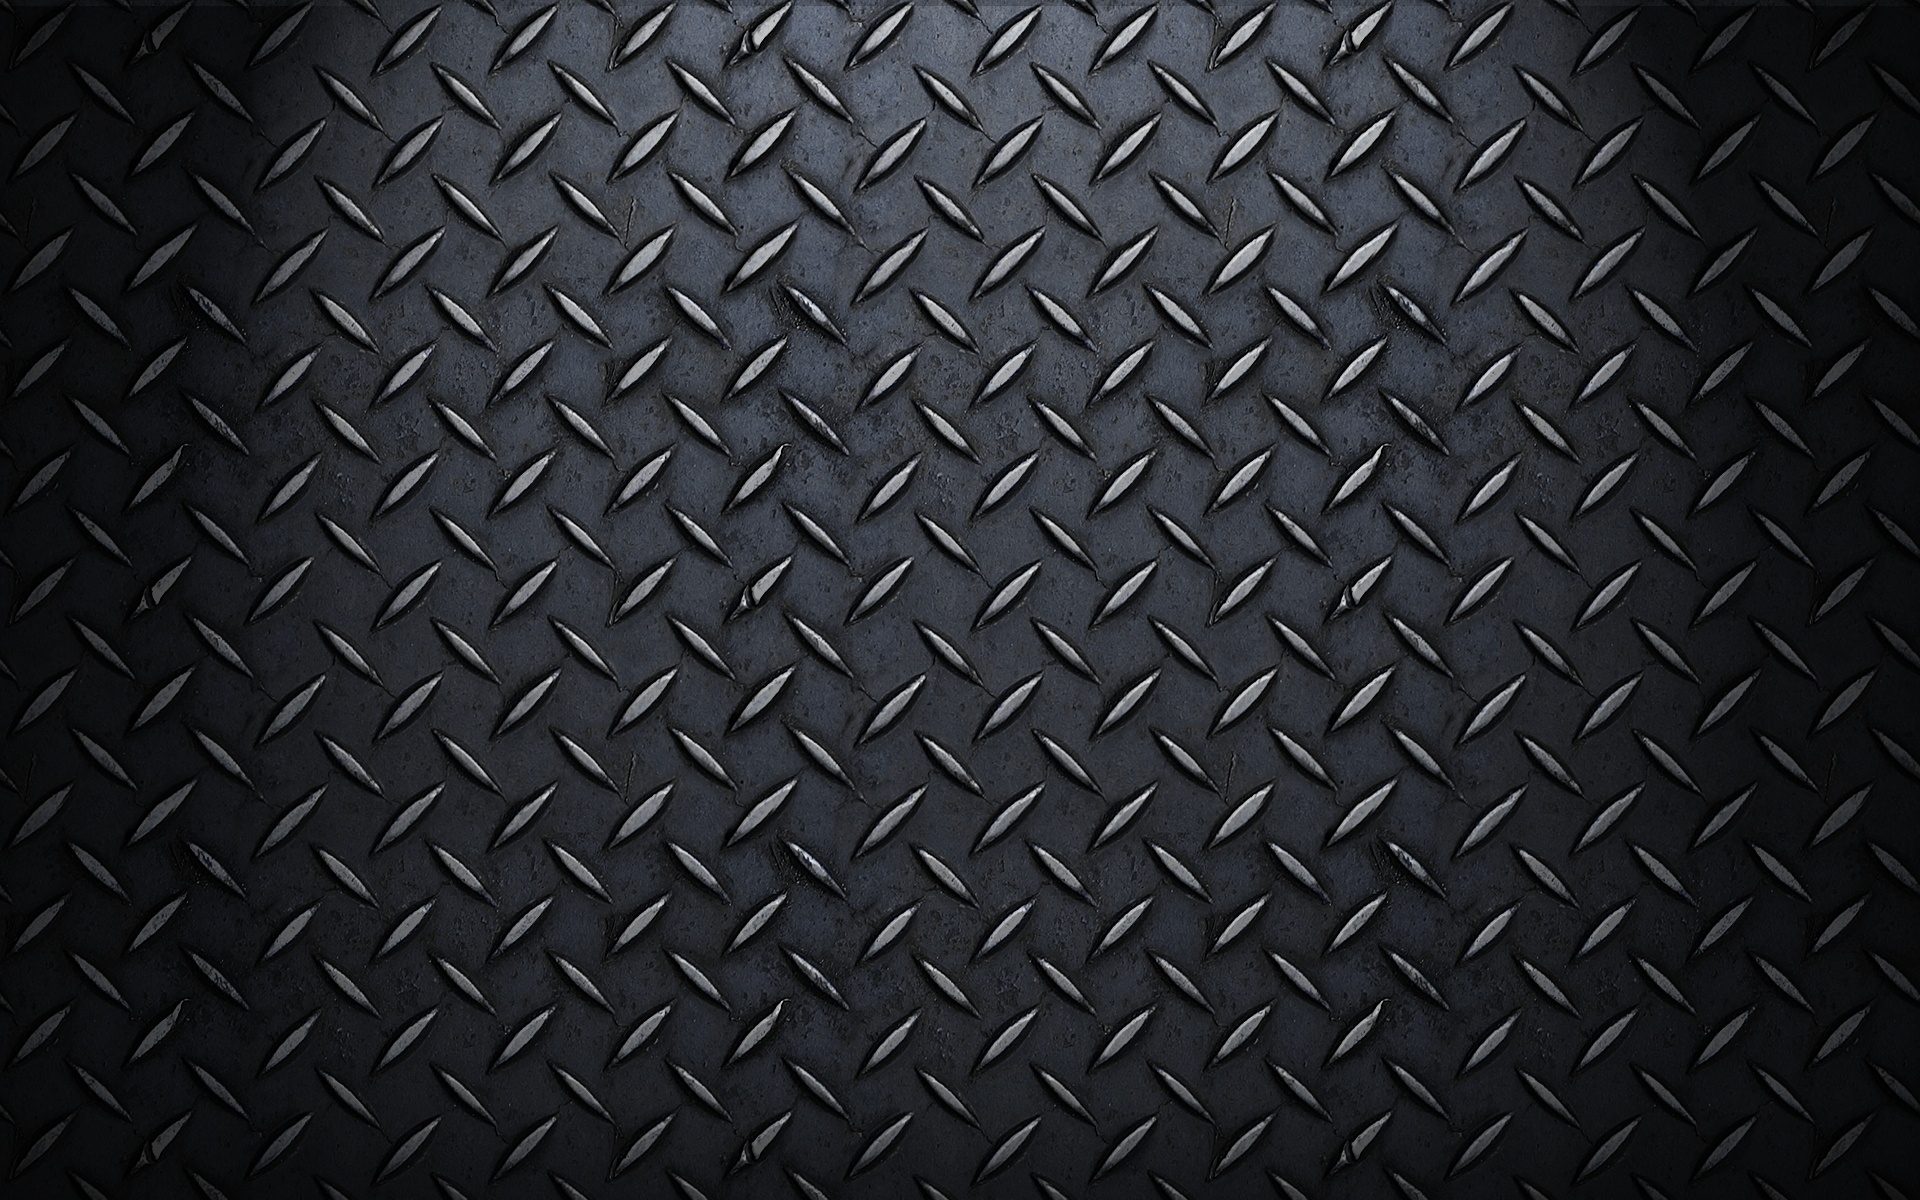 Plain Wallpapers HD black steel